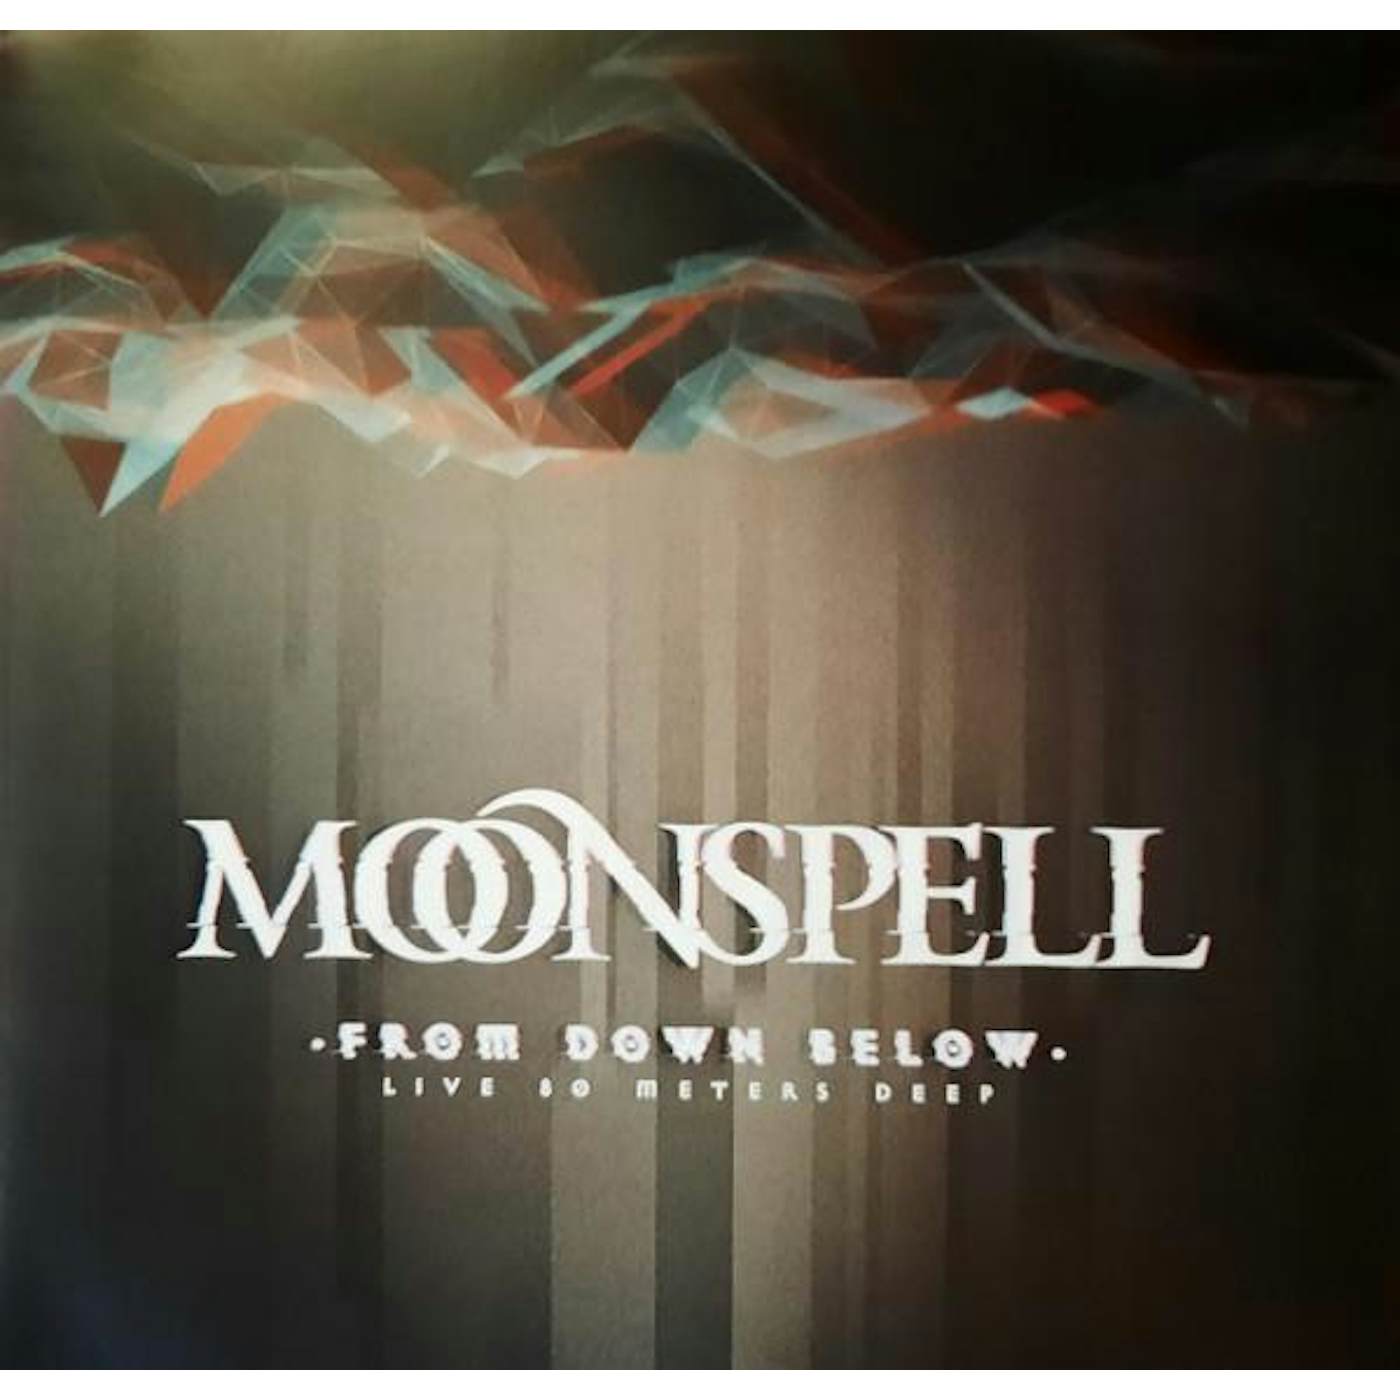 Moonspell From Down Below - Live 80 Meters Deep Vinyl Record